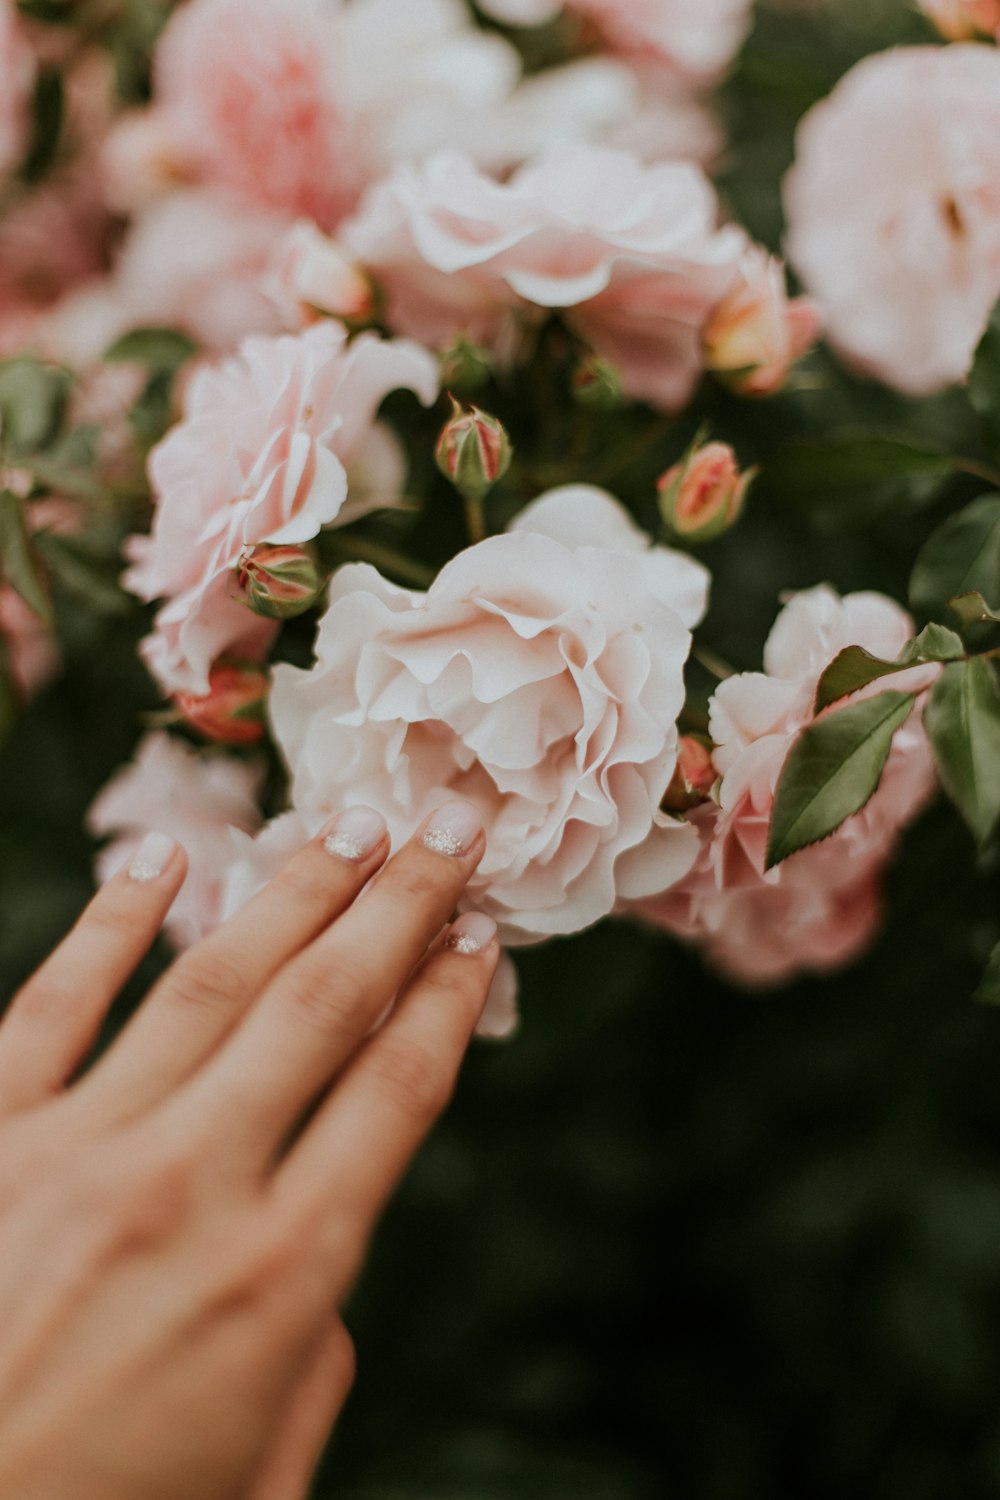 Persona che tiene il fiore dai petali a grappolo bianco e rosa